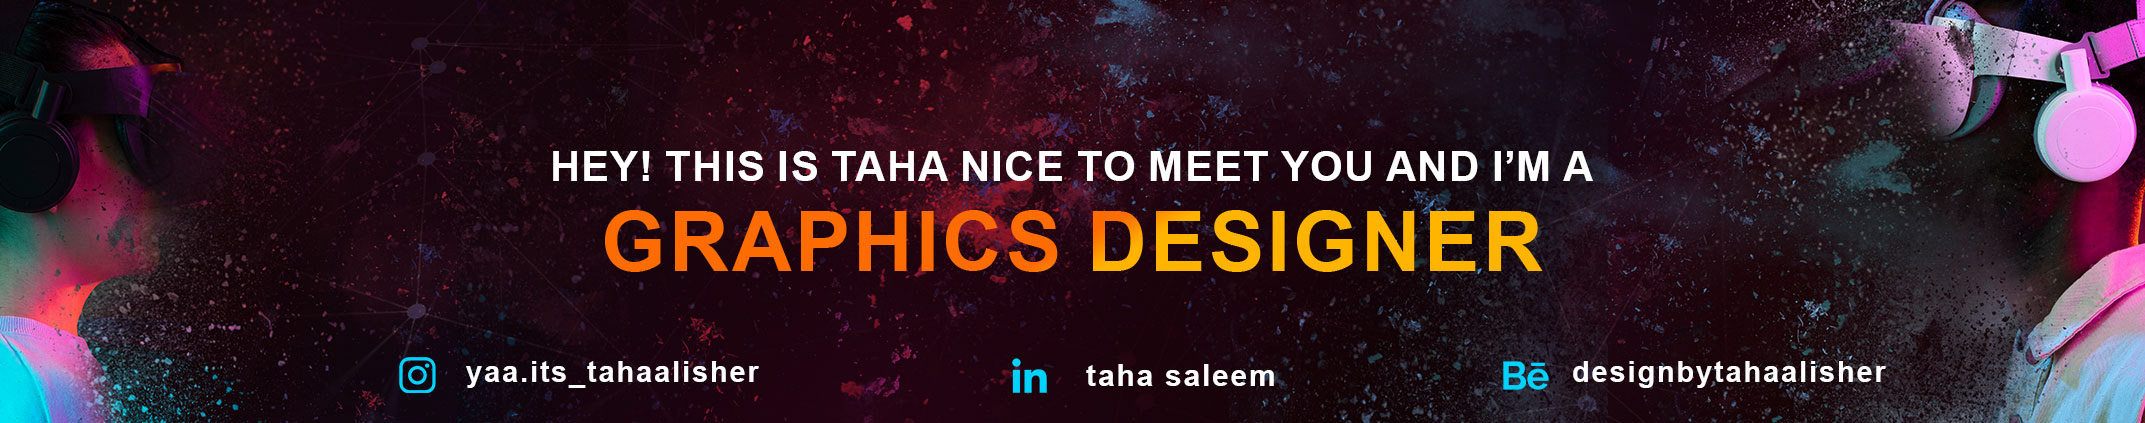 Taha Saleem profil başlığı